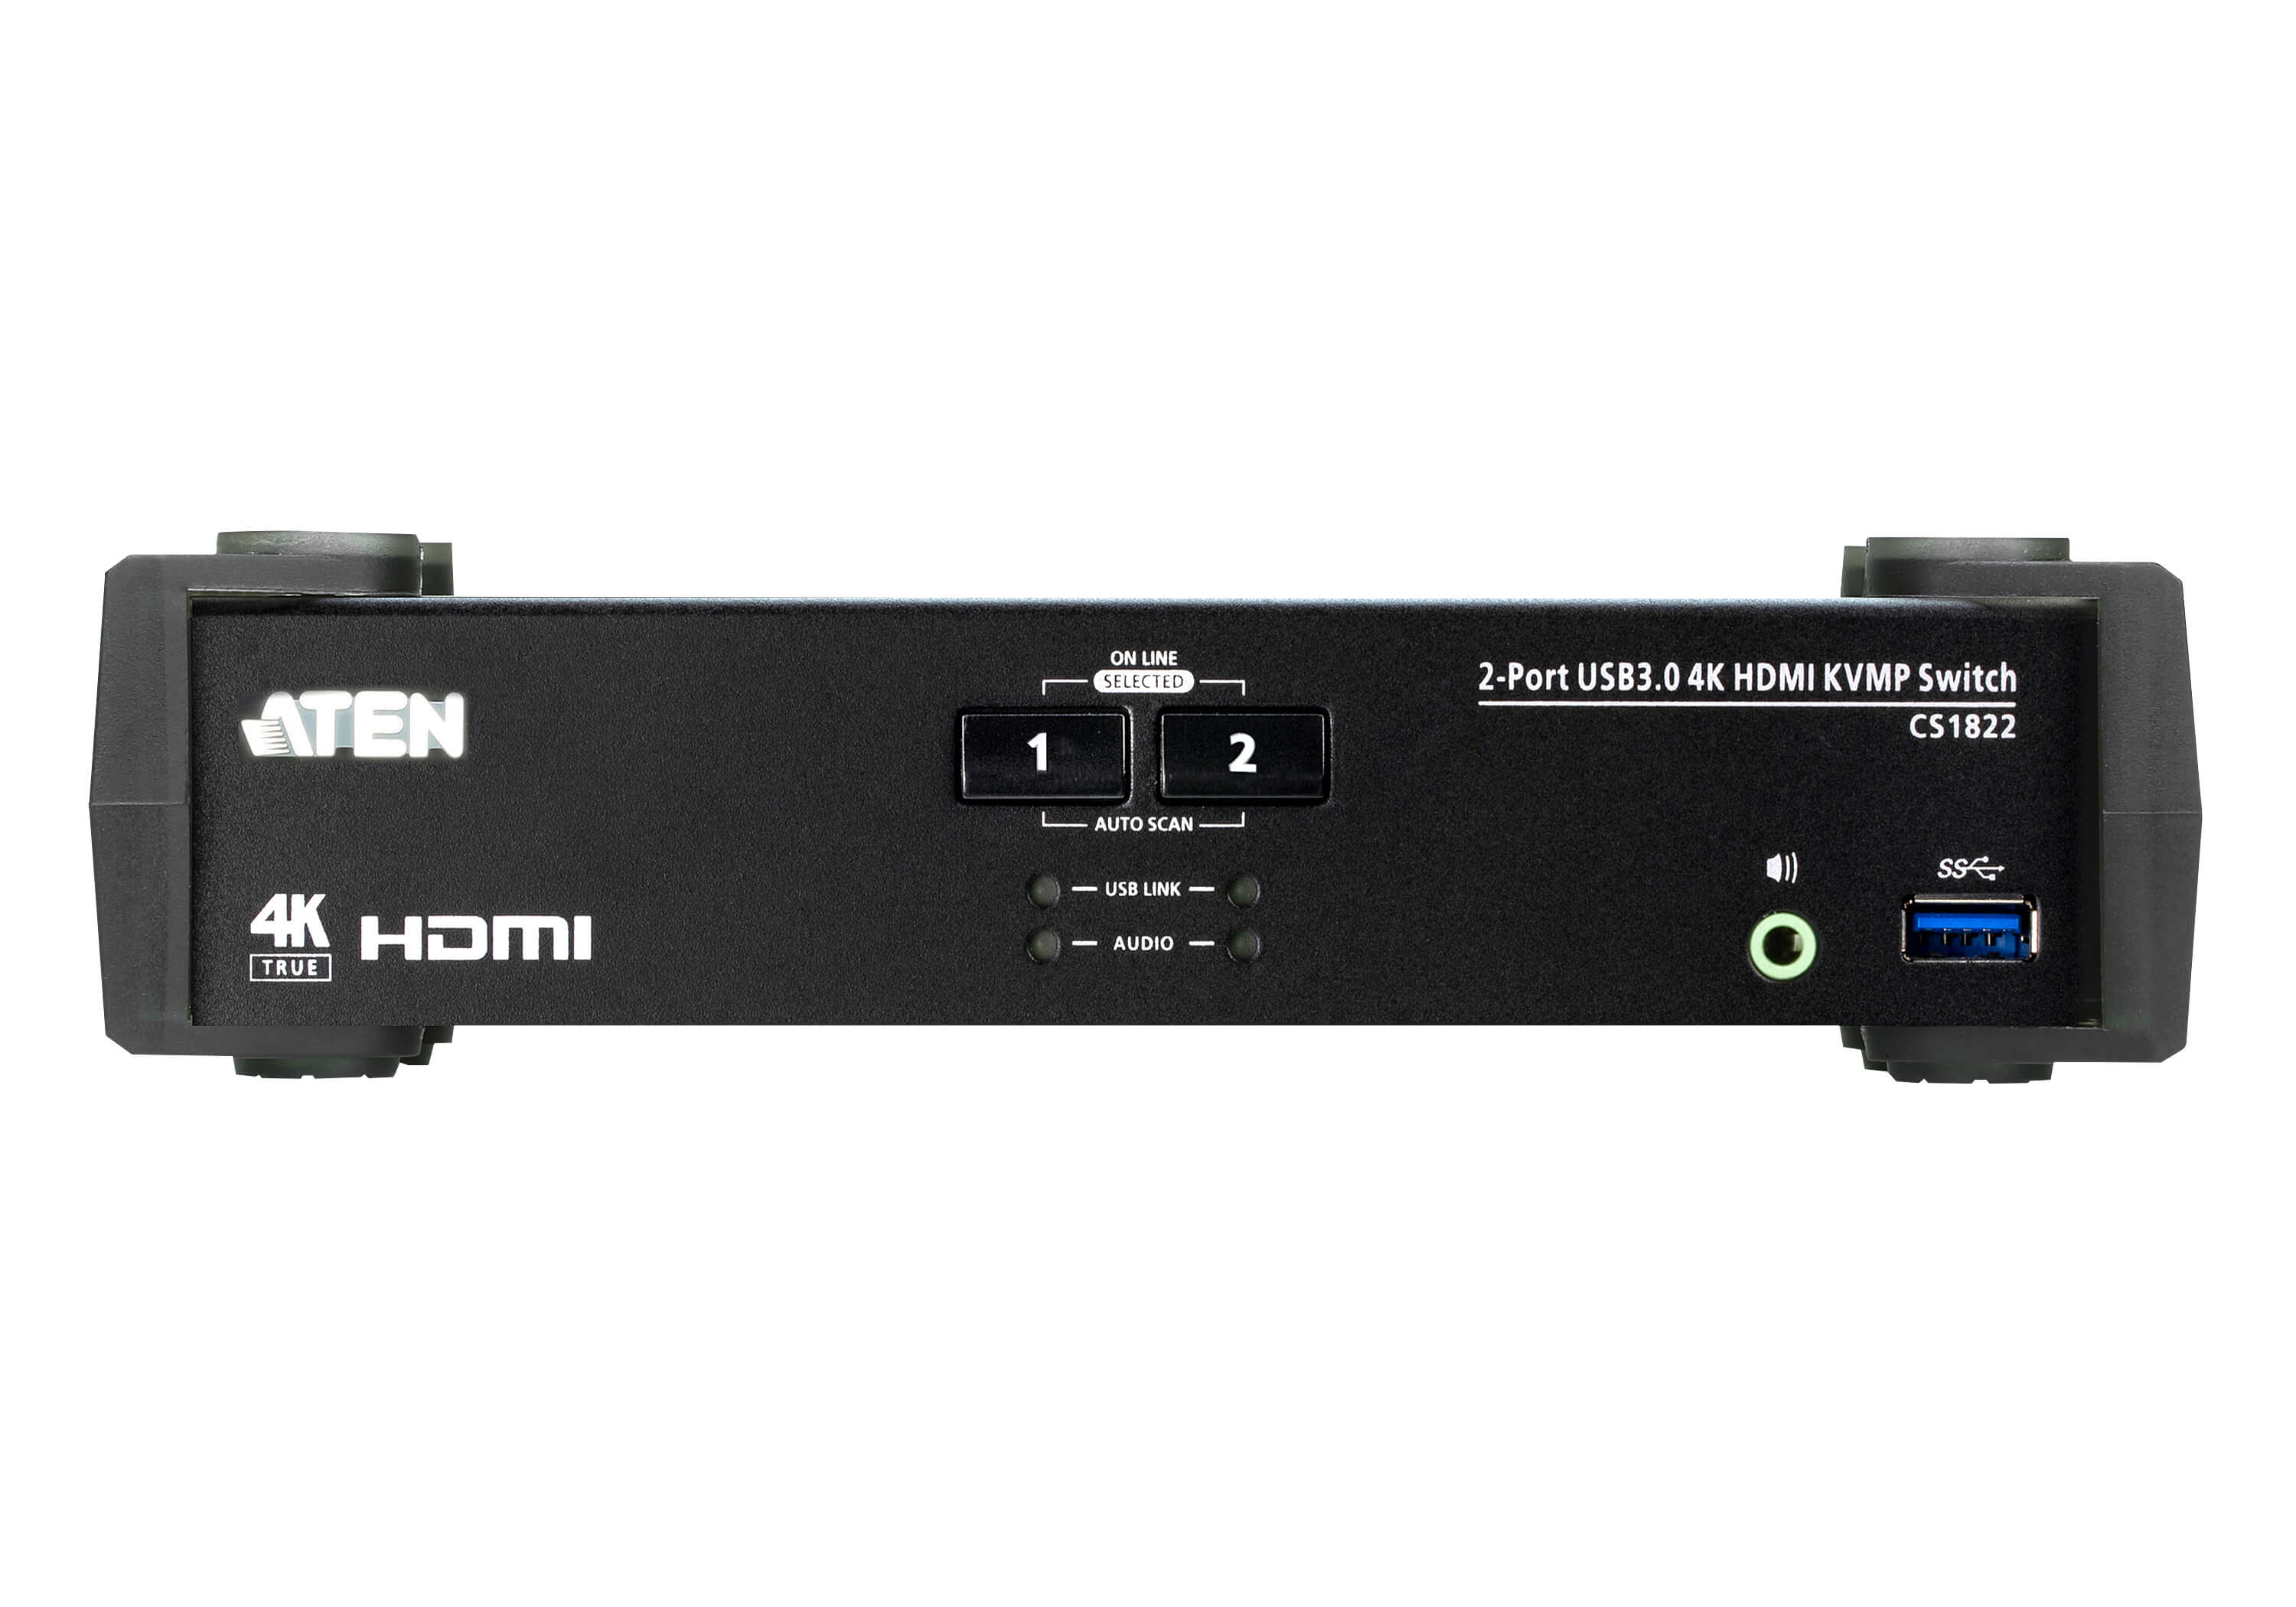 取寄 ATEN CS1822 2ポート USB 3.0ハブ搭載 HDMI KVMPTMスイッチ